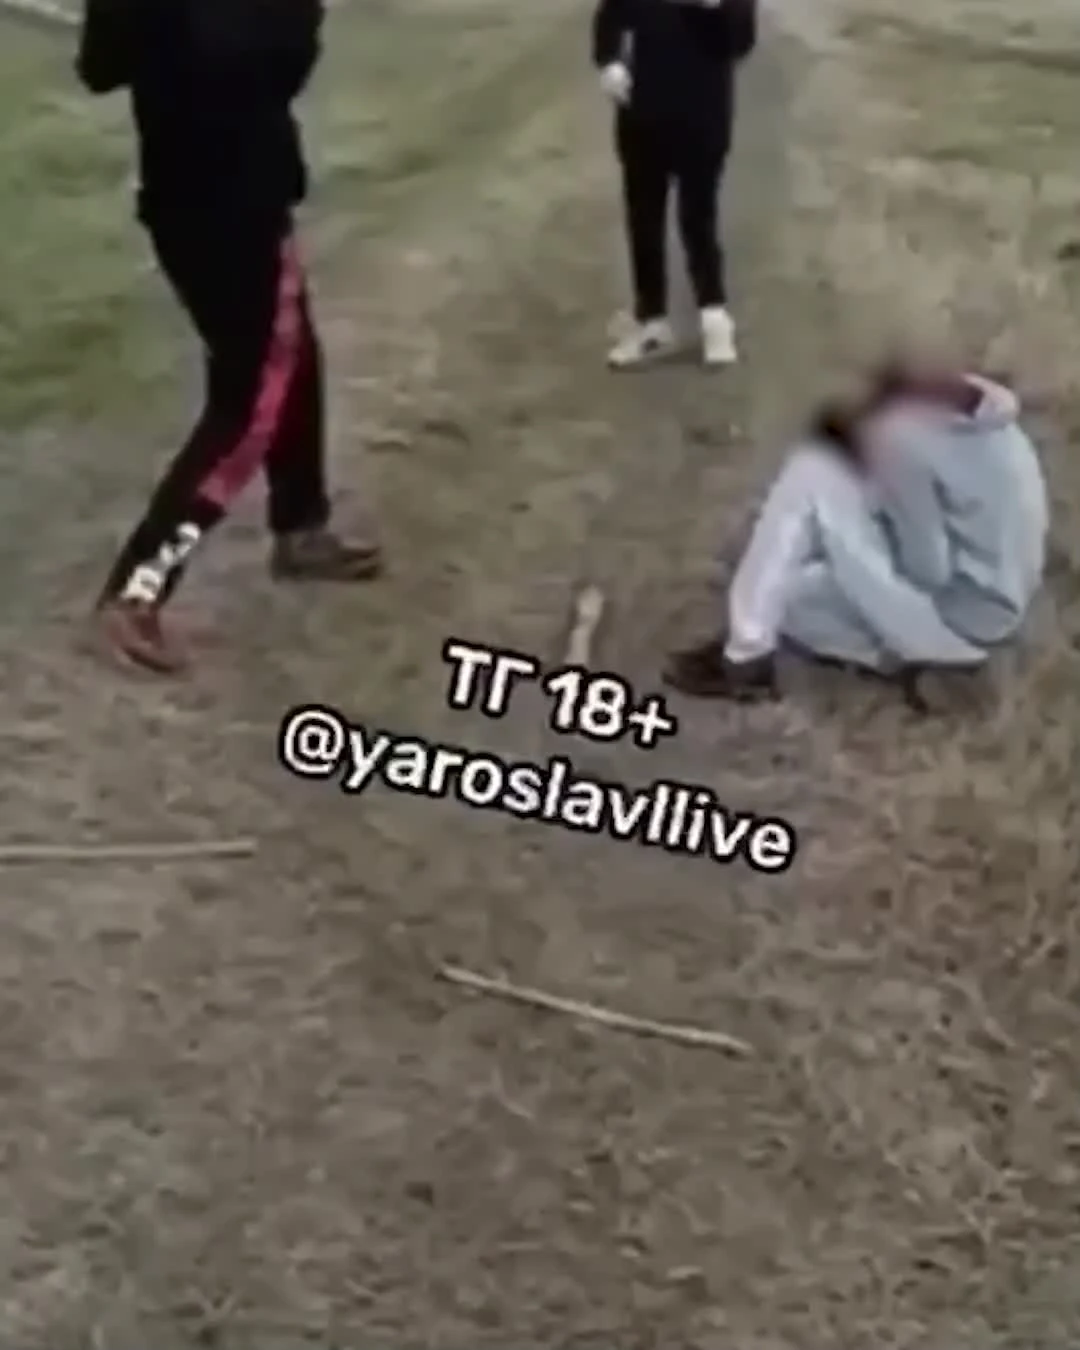 В Брагино в Ярославле школьники избили девочку палкой по голове 23 апреля  2022 - 25 апреля 2023 - 76.ru